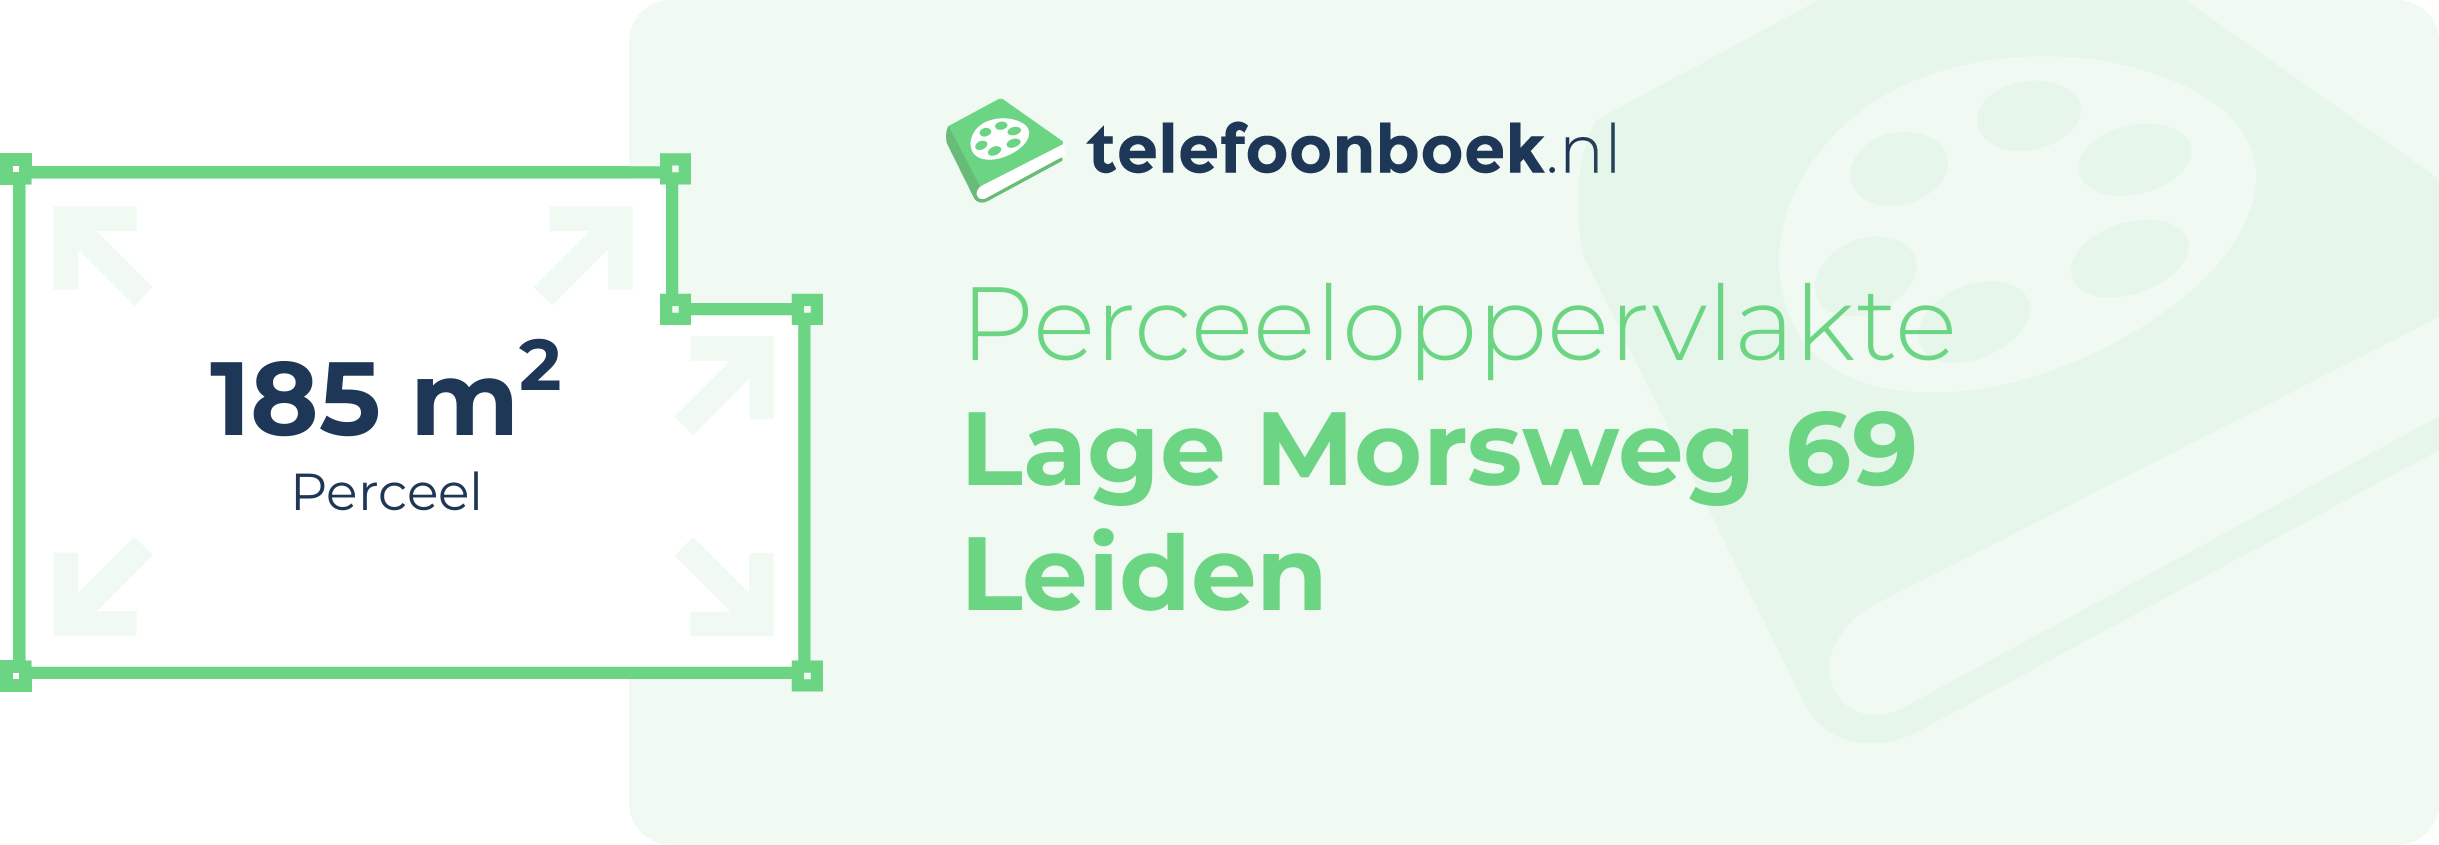 Perceeloppervlakte Lage Morsweg 69 Leiden